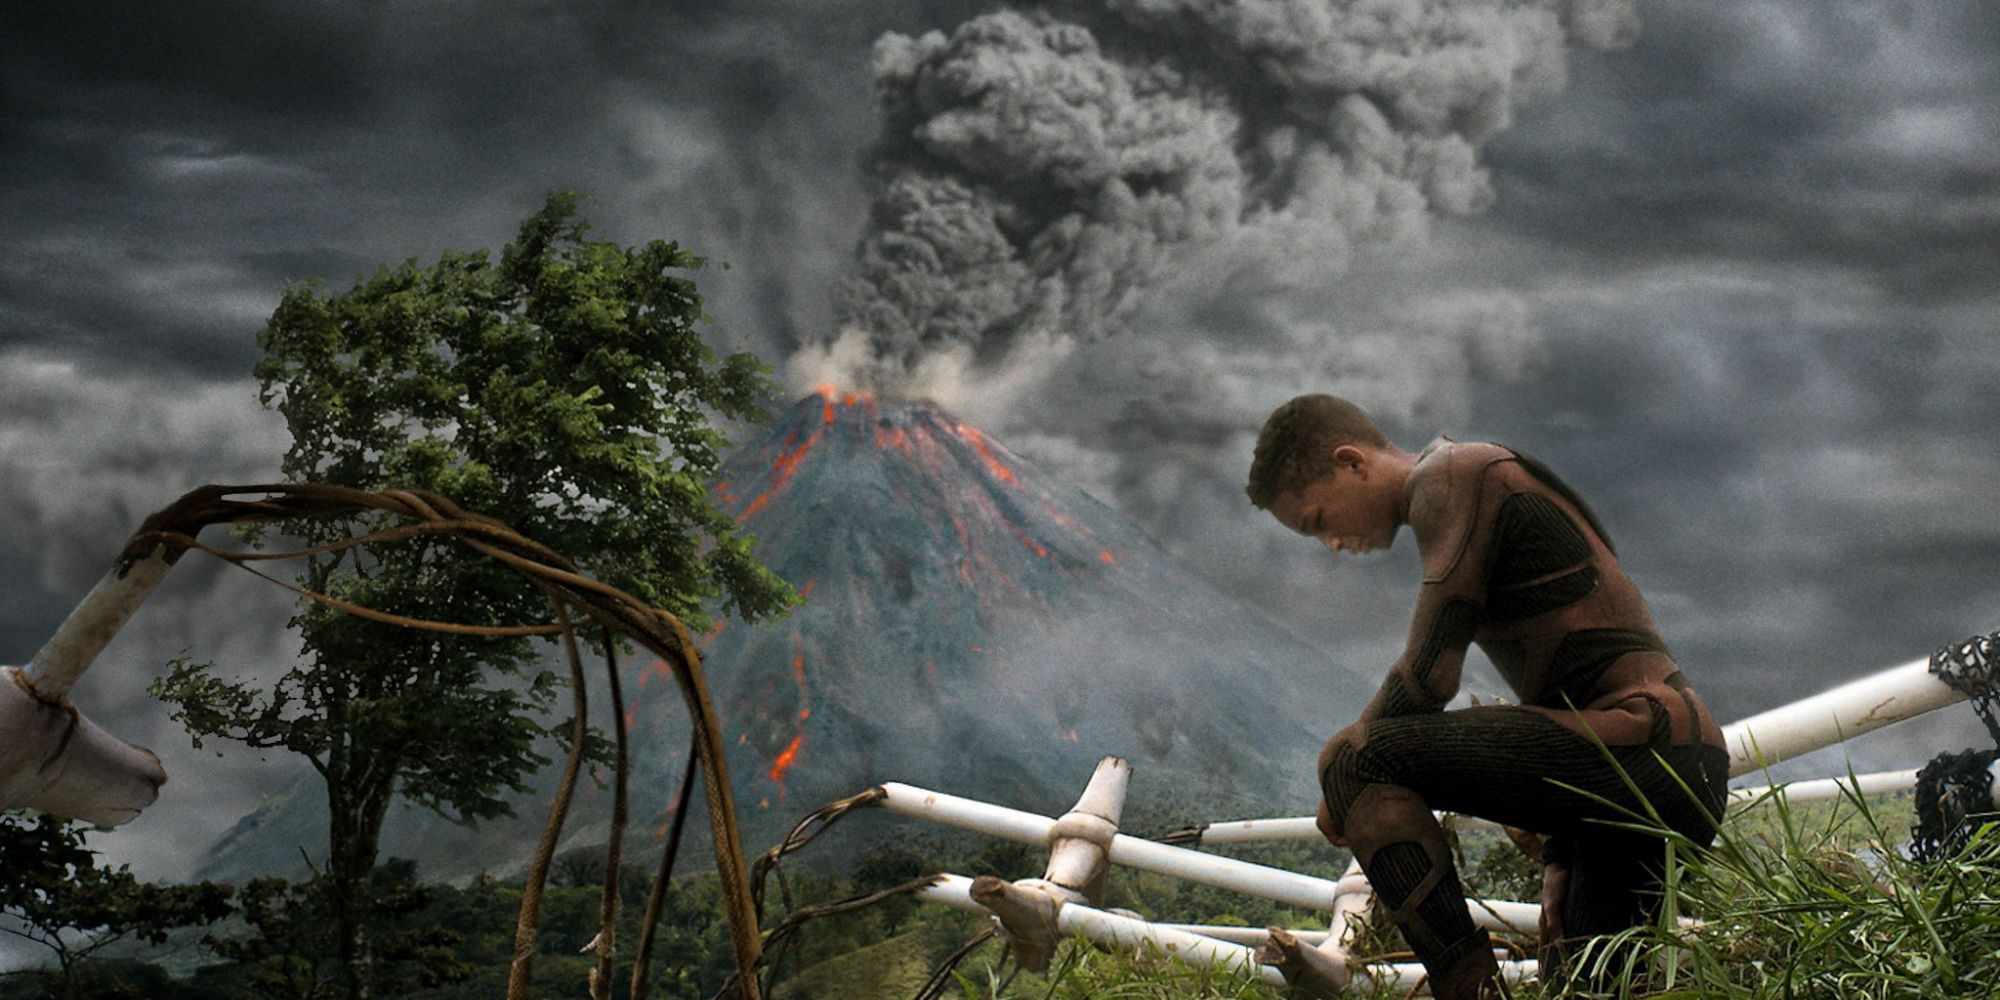 Kitai Raige s'agenouille parmi les décombres sur fond de volcan